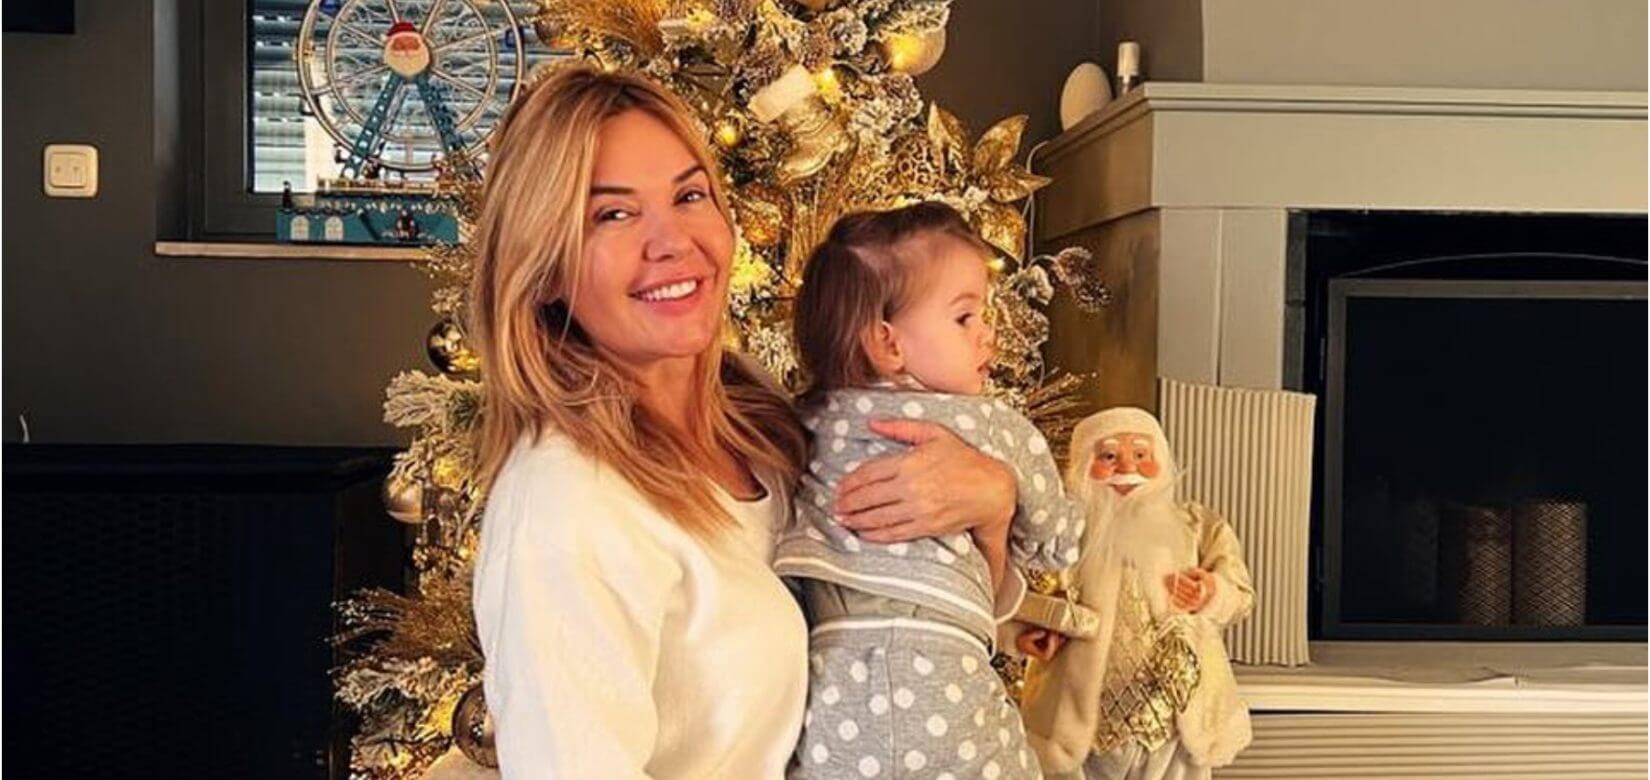 Χριστίνα Παππά:  Γιορτάζει τα πιο όμορφα Χριστούγεννα αγκαλιά με την συνονόματη εγγονή της